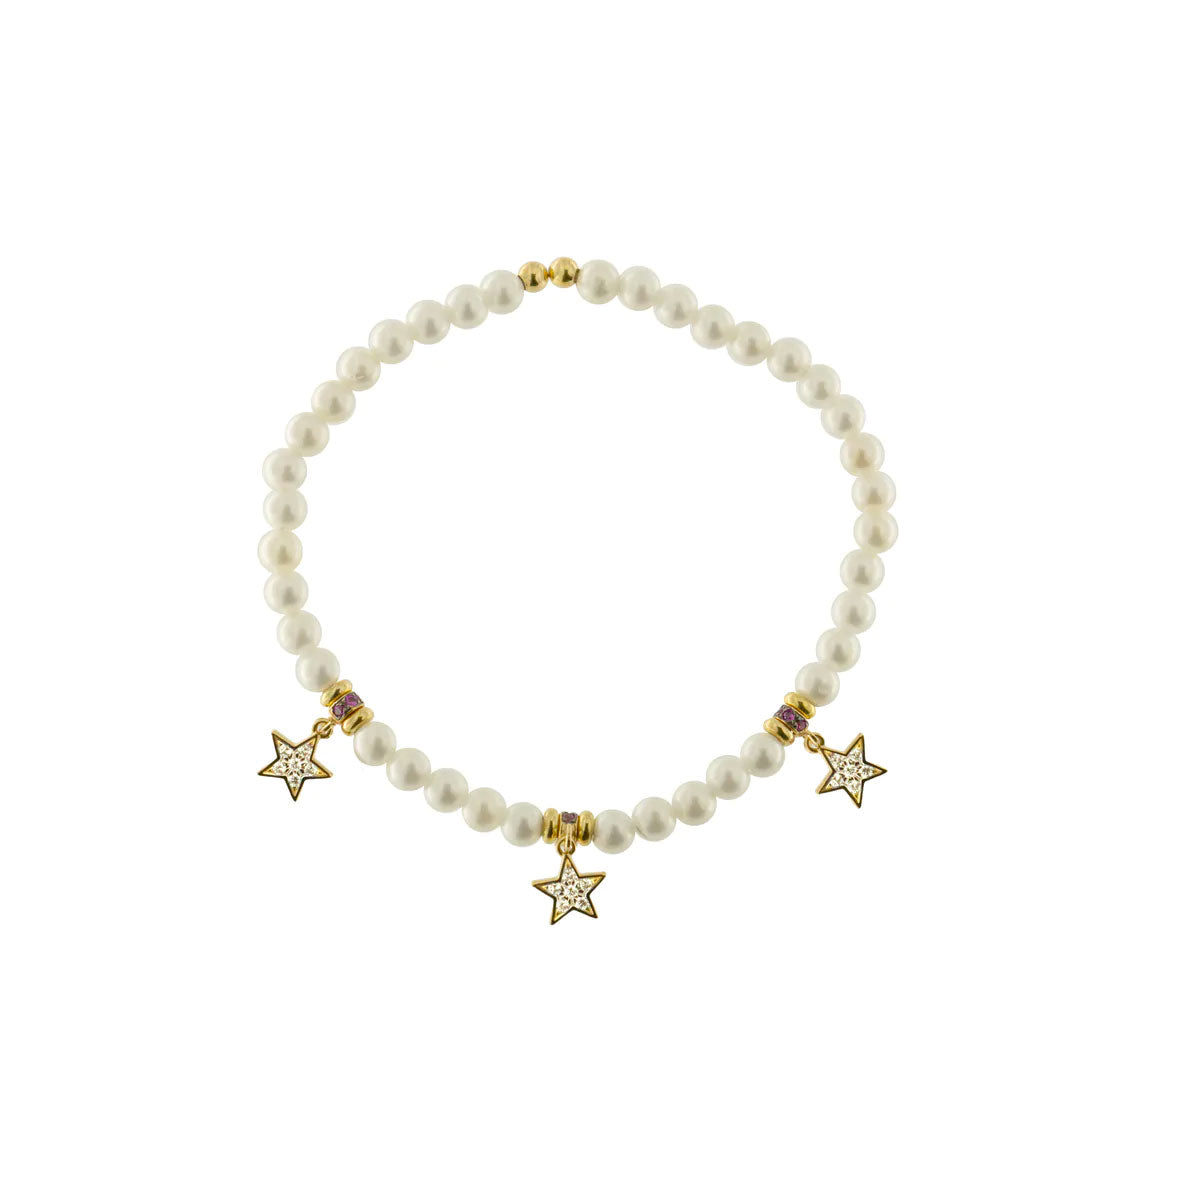 Bracciale elastico composto da perline bianche e 3 stelle pendenti in argento 925 con finitura oro giallo 18kt. Zirconi bianchi incastonati a mano sulle tre stelle.